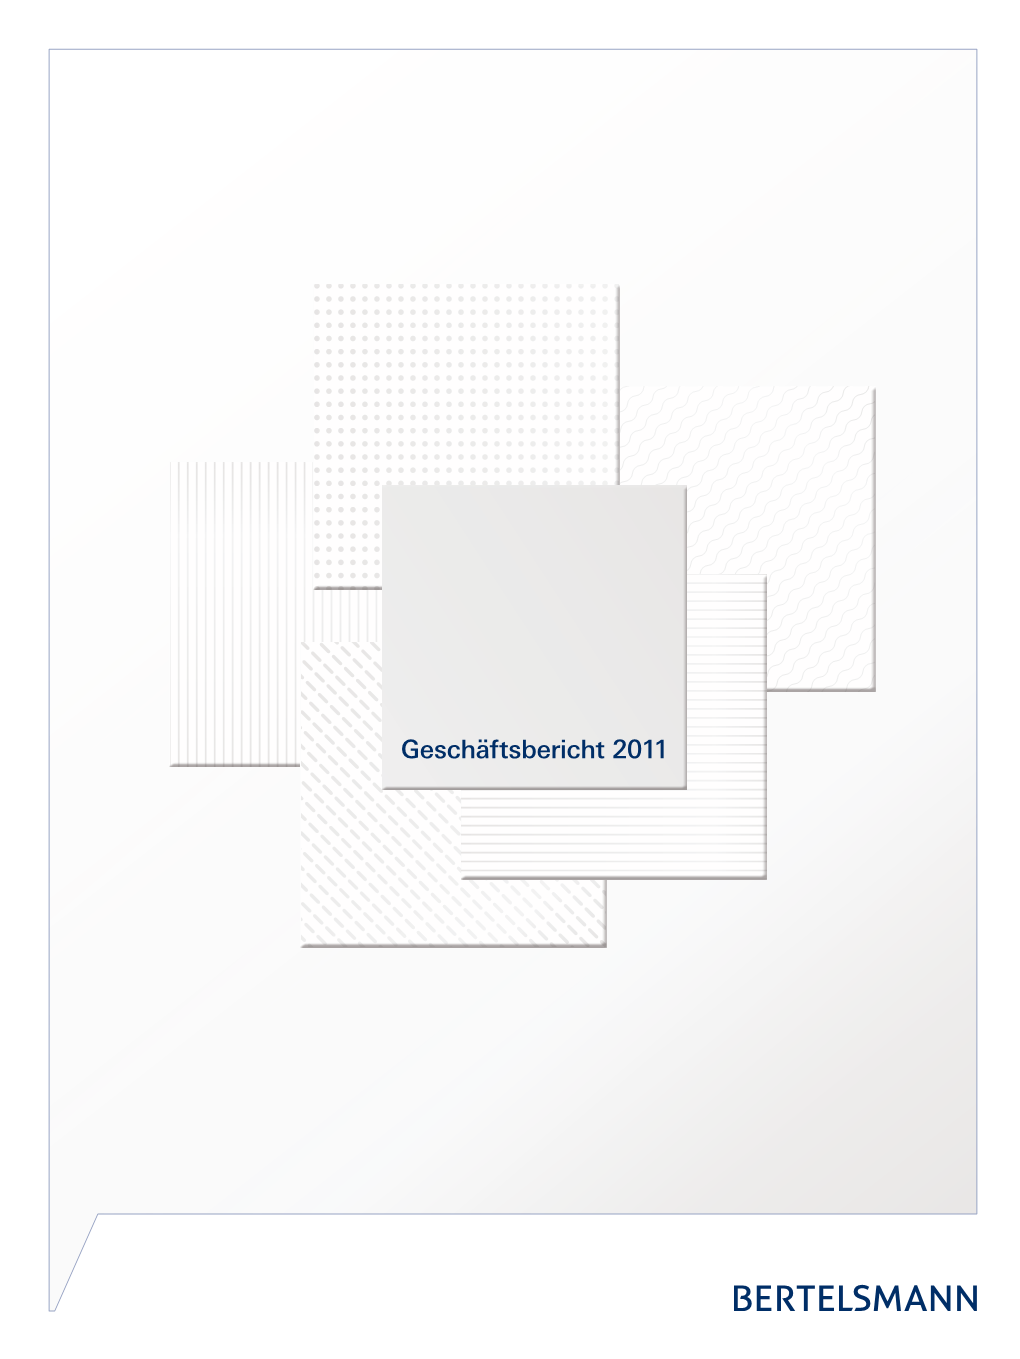 Geschäftsbericht 2011 Bertelsmann Auf Einen Blick